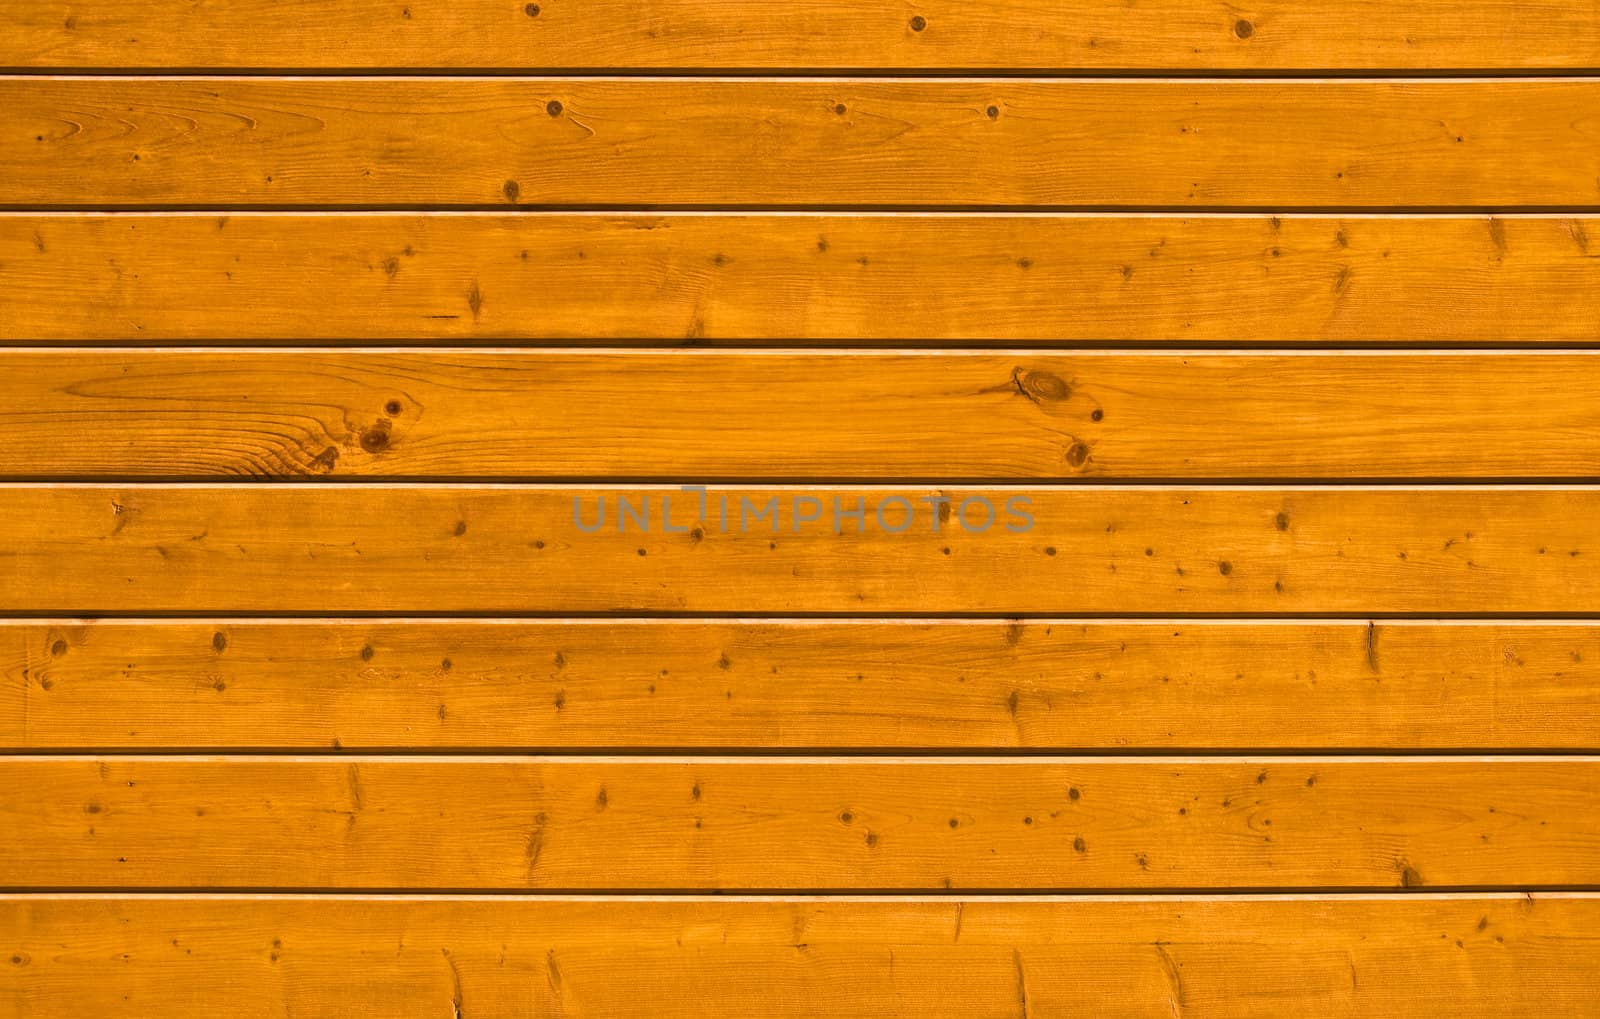 Wall of pine natural wood board. Lining closeup, frontally.